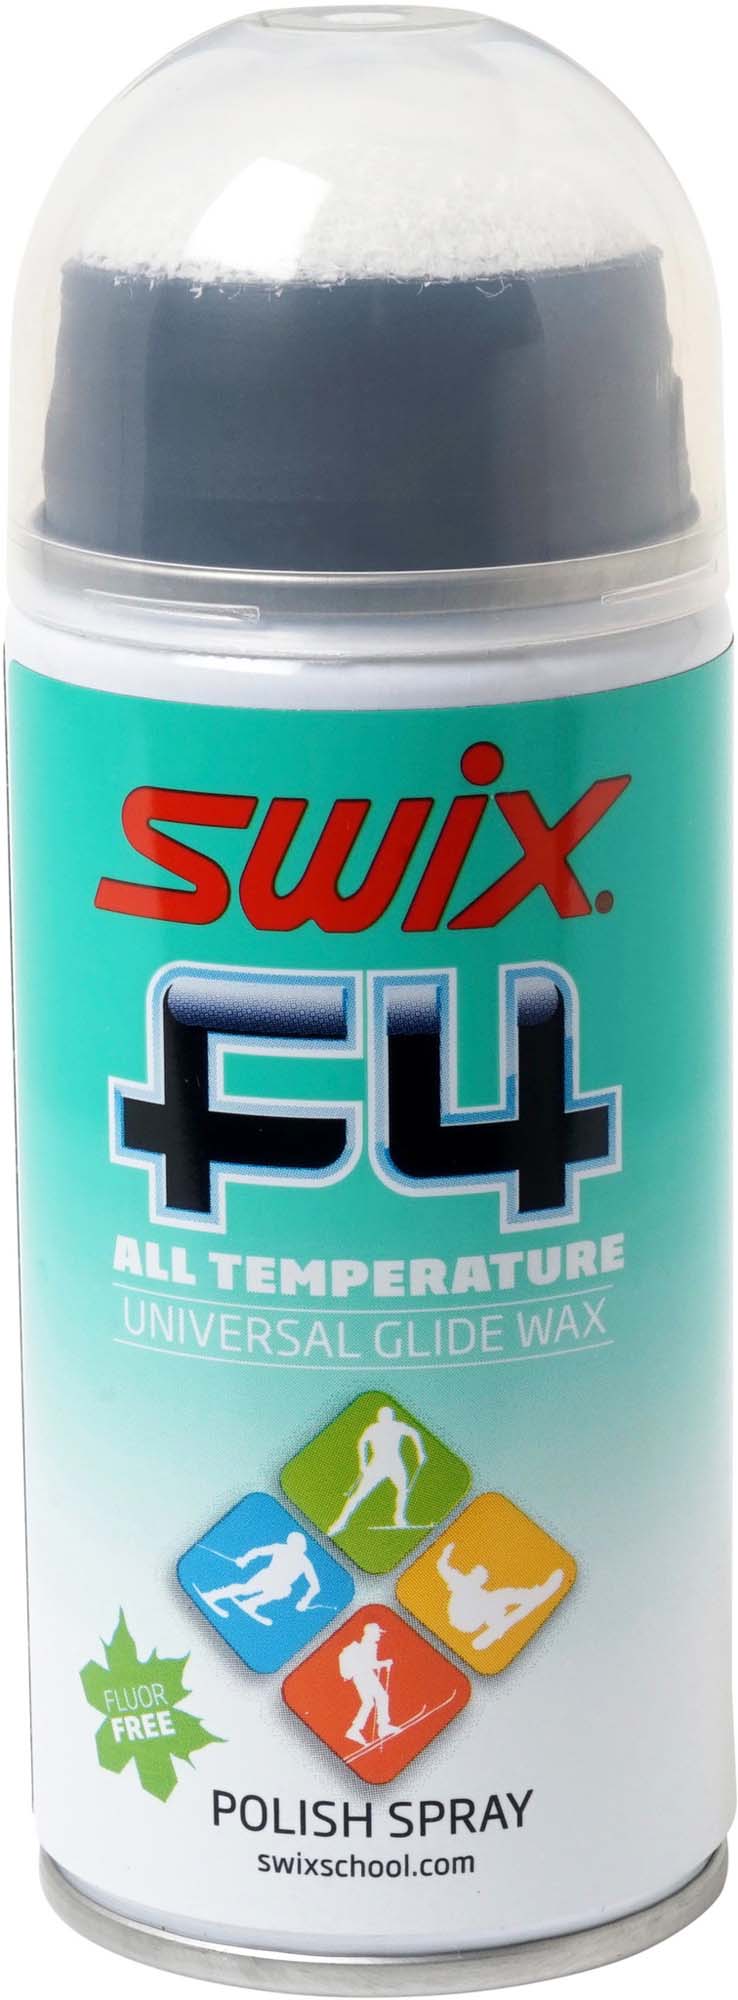 SWIX Glide Wax Spray 150Ml